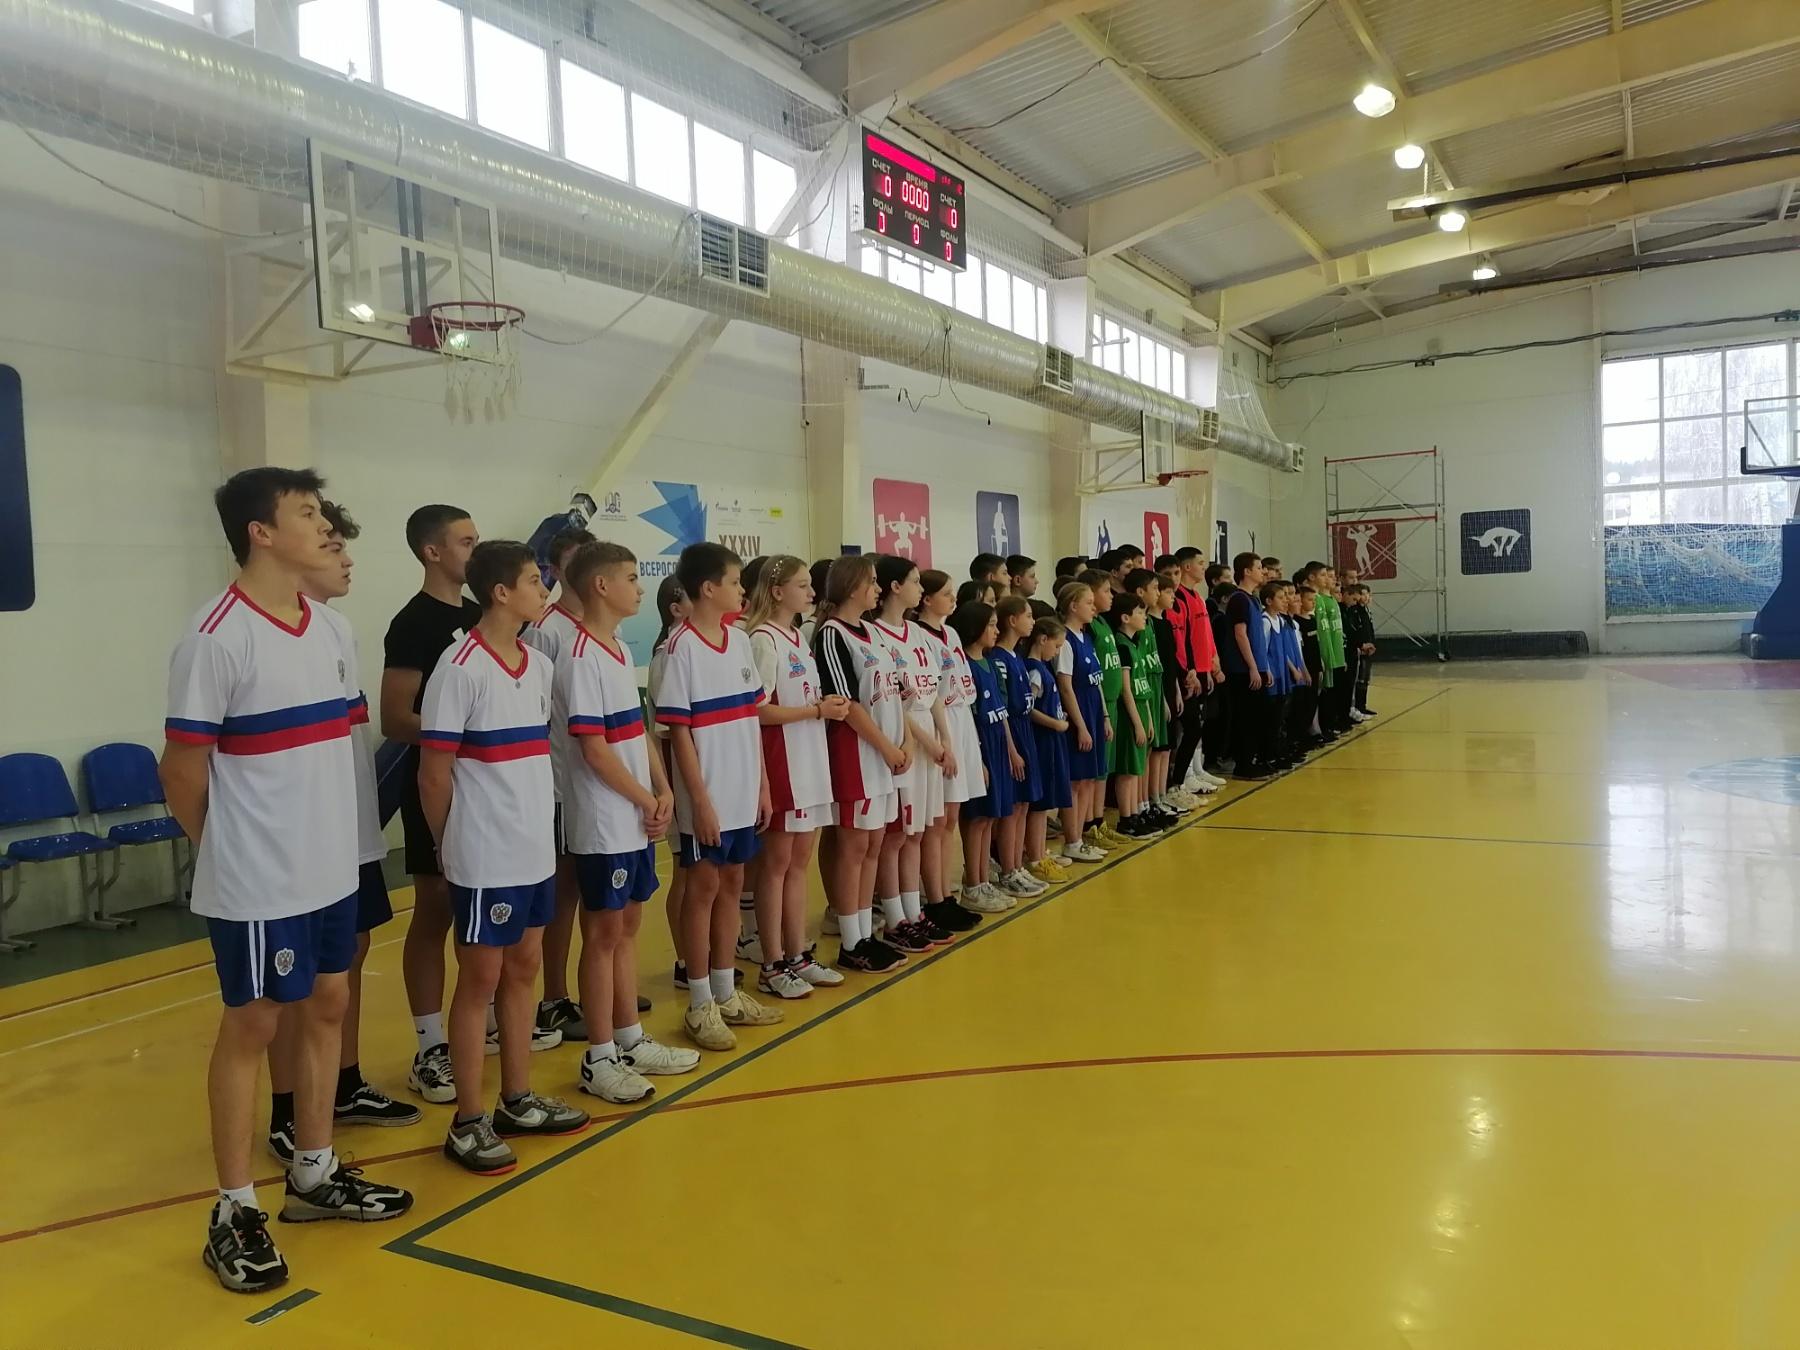 Состоялся Муниципальный этап Школьной спортивной лиги Ульяновской области.